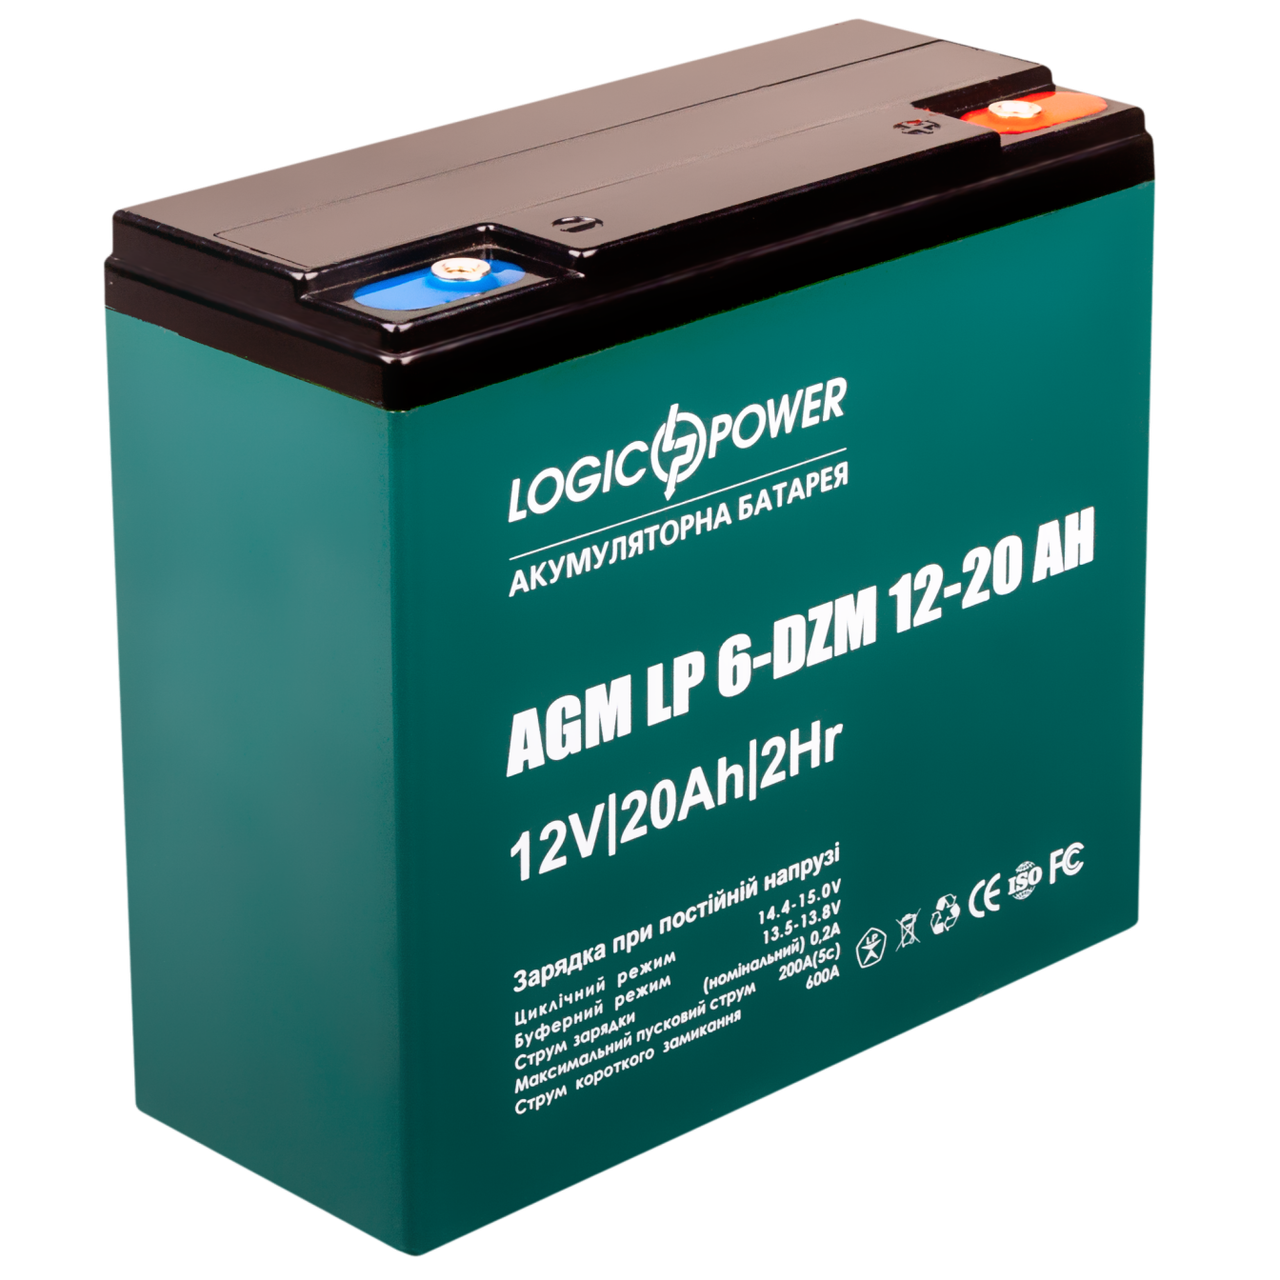 Акумулятор для інвалідної коляски LogicPower LP 6-DZM-20 (12В, 20аг)